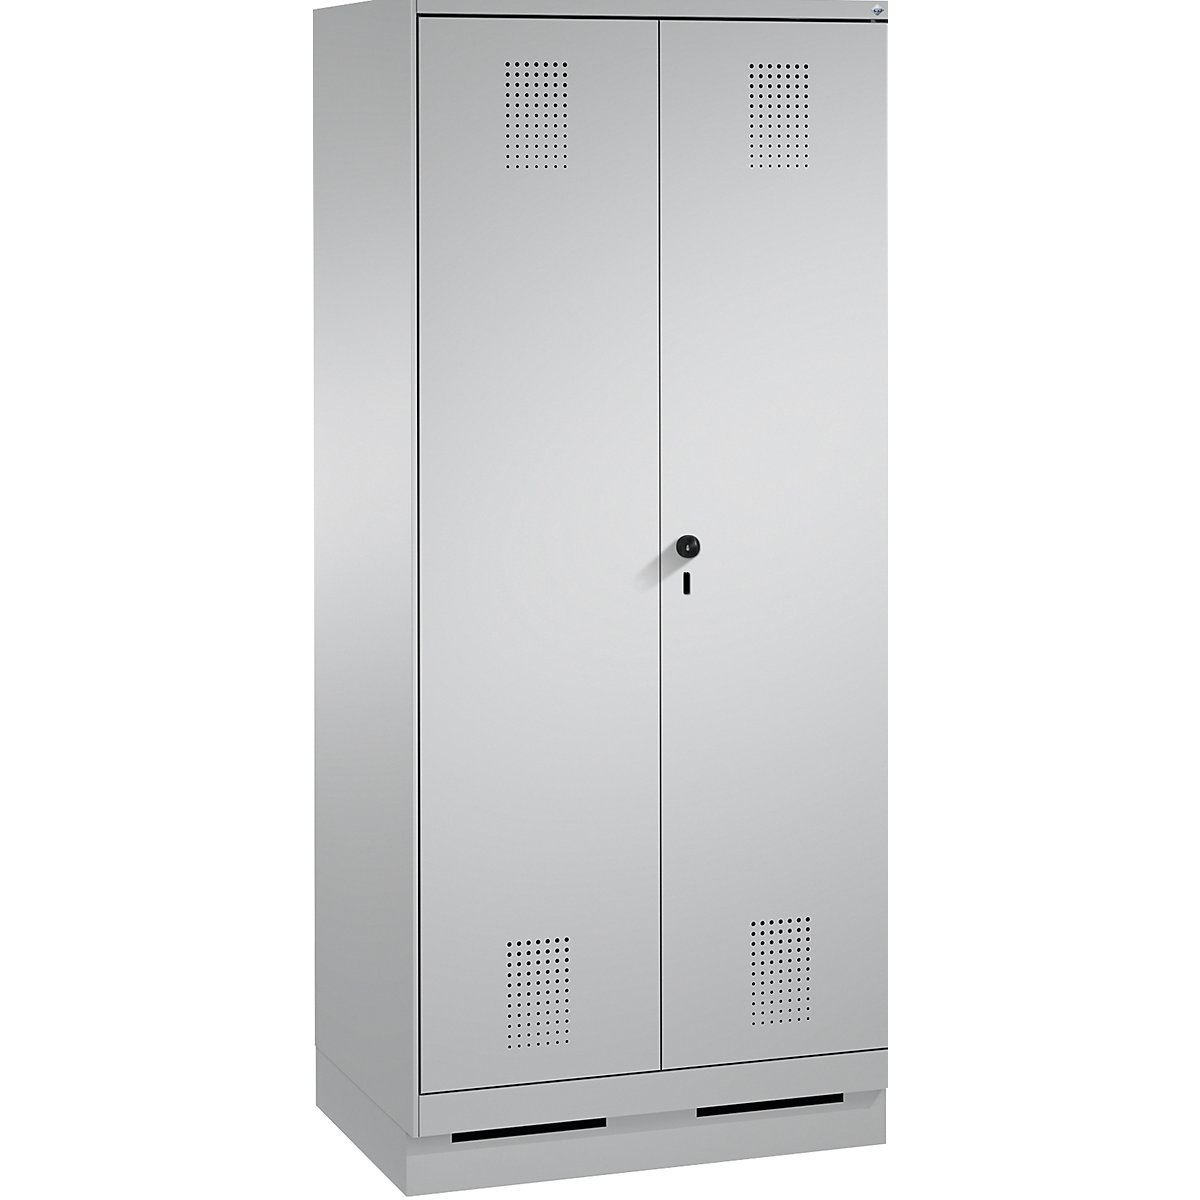 Garderobna omara EVOLO, dvokrilna vrata – C+P, 2 razdelka, širina razdelka 400 mm, s podnožjem, bela aluminijasta / bela aluminijasta-2